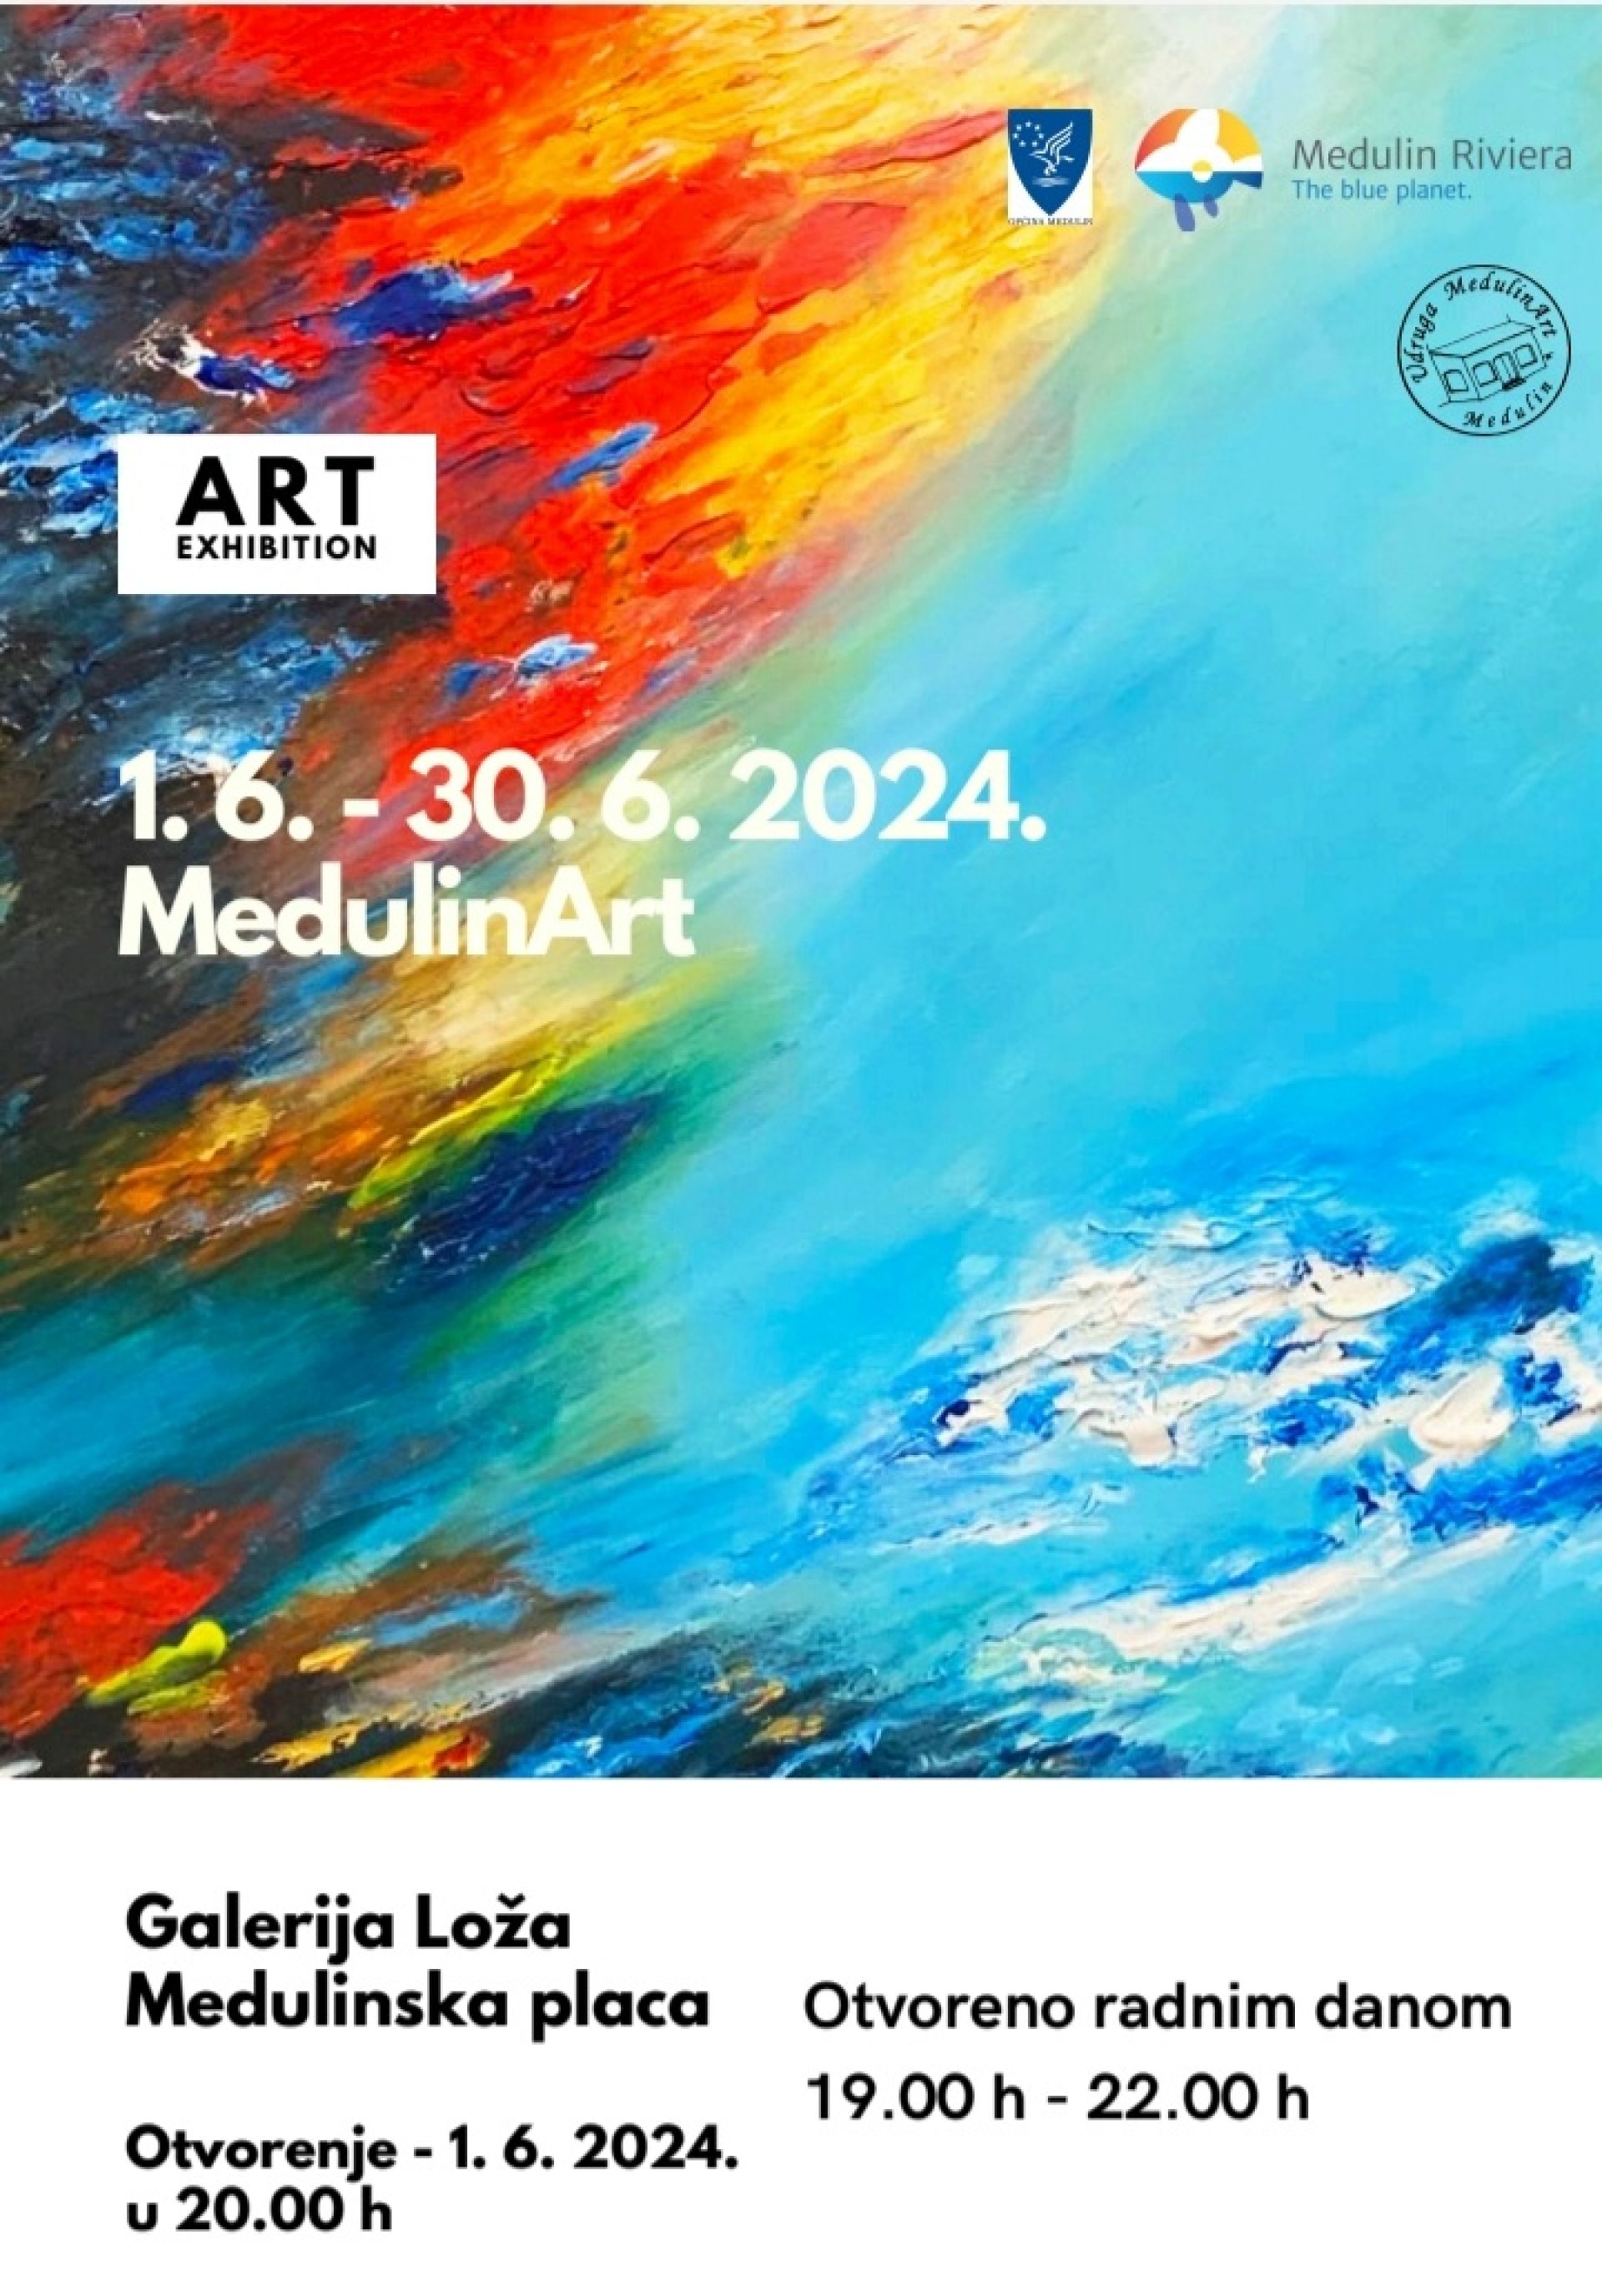 Otvorenje izložbe MedulinArta - 01.06.2024. 